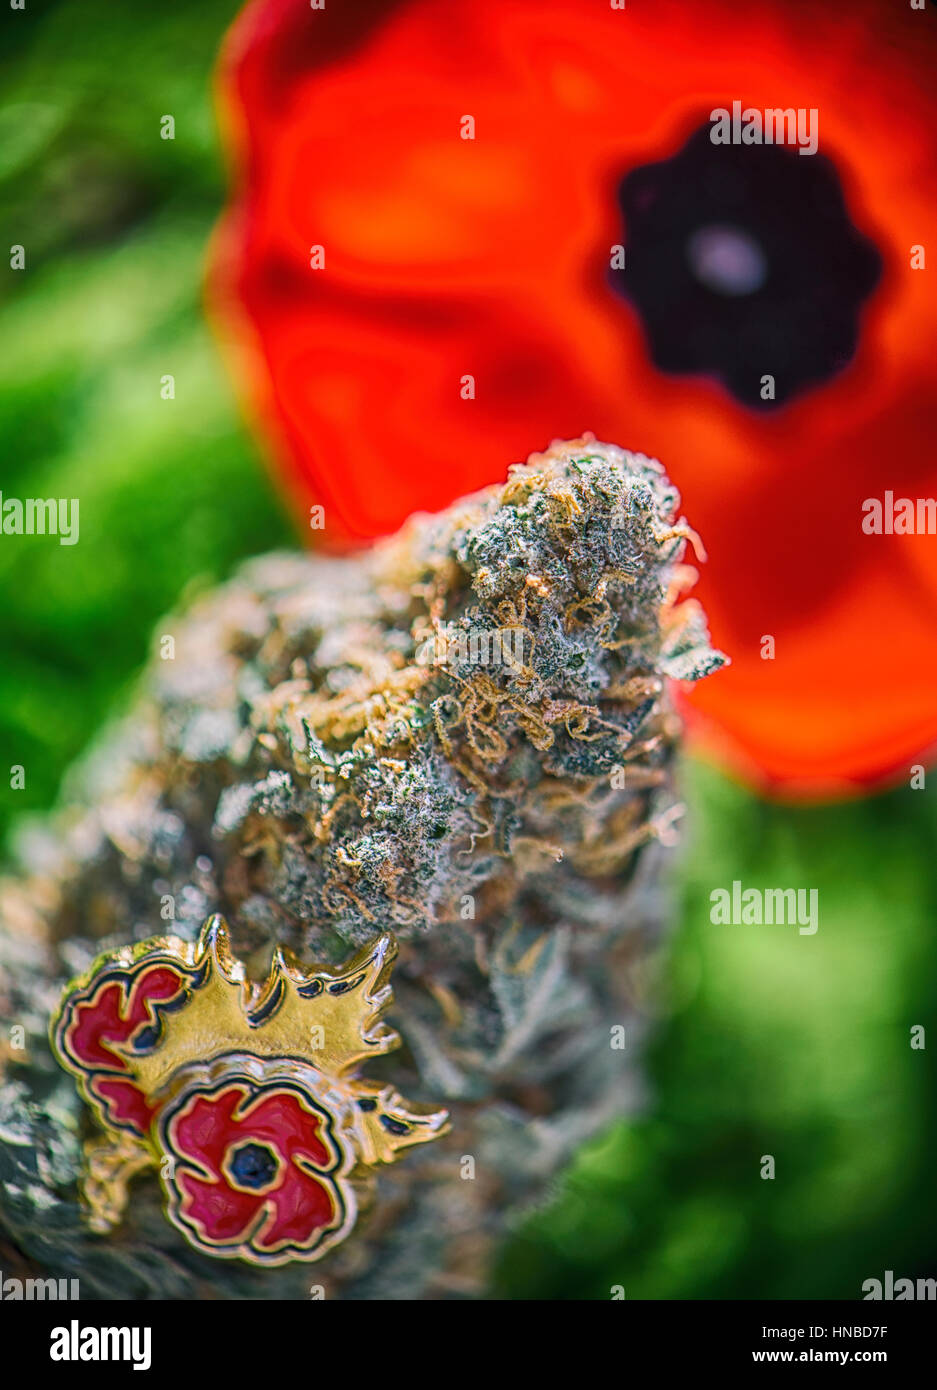 Dettaglio della cannabis bud davanti a un fiore di papavero - medico di marijuana per i veterani concept Foto Stock